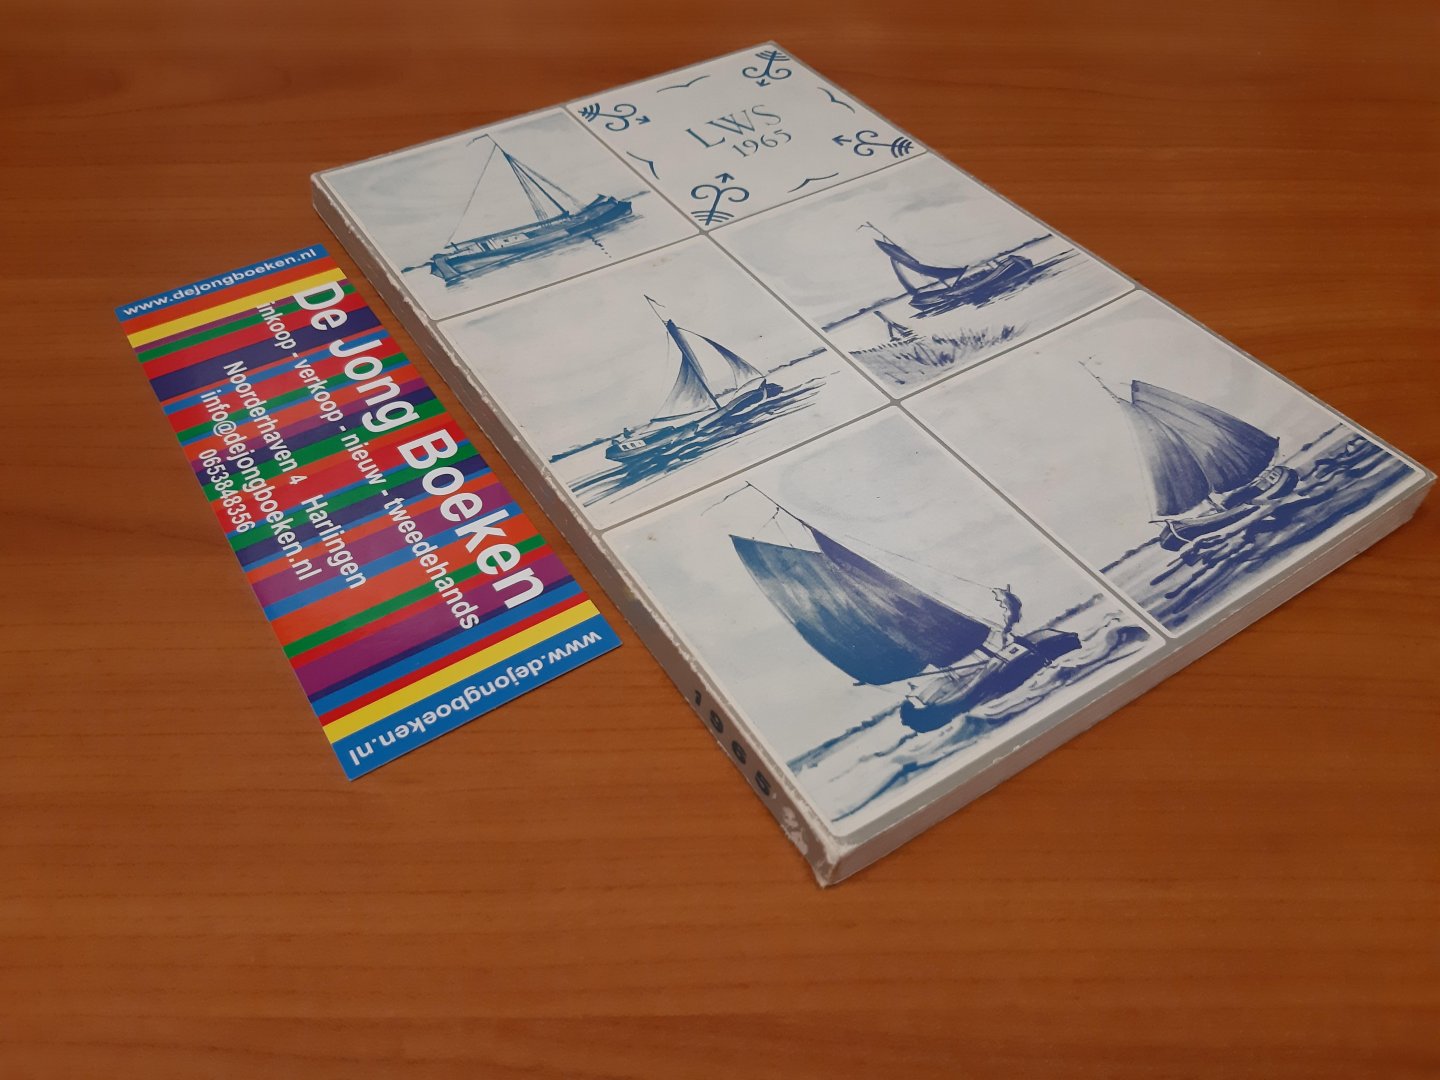  - Klubboekje van de vereniging Leeuwarder watersport / 49e verenigingsjaar